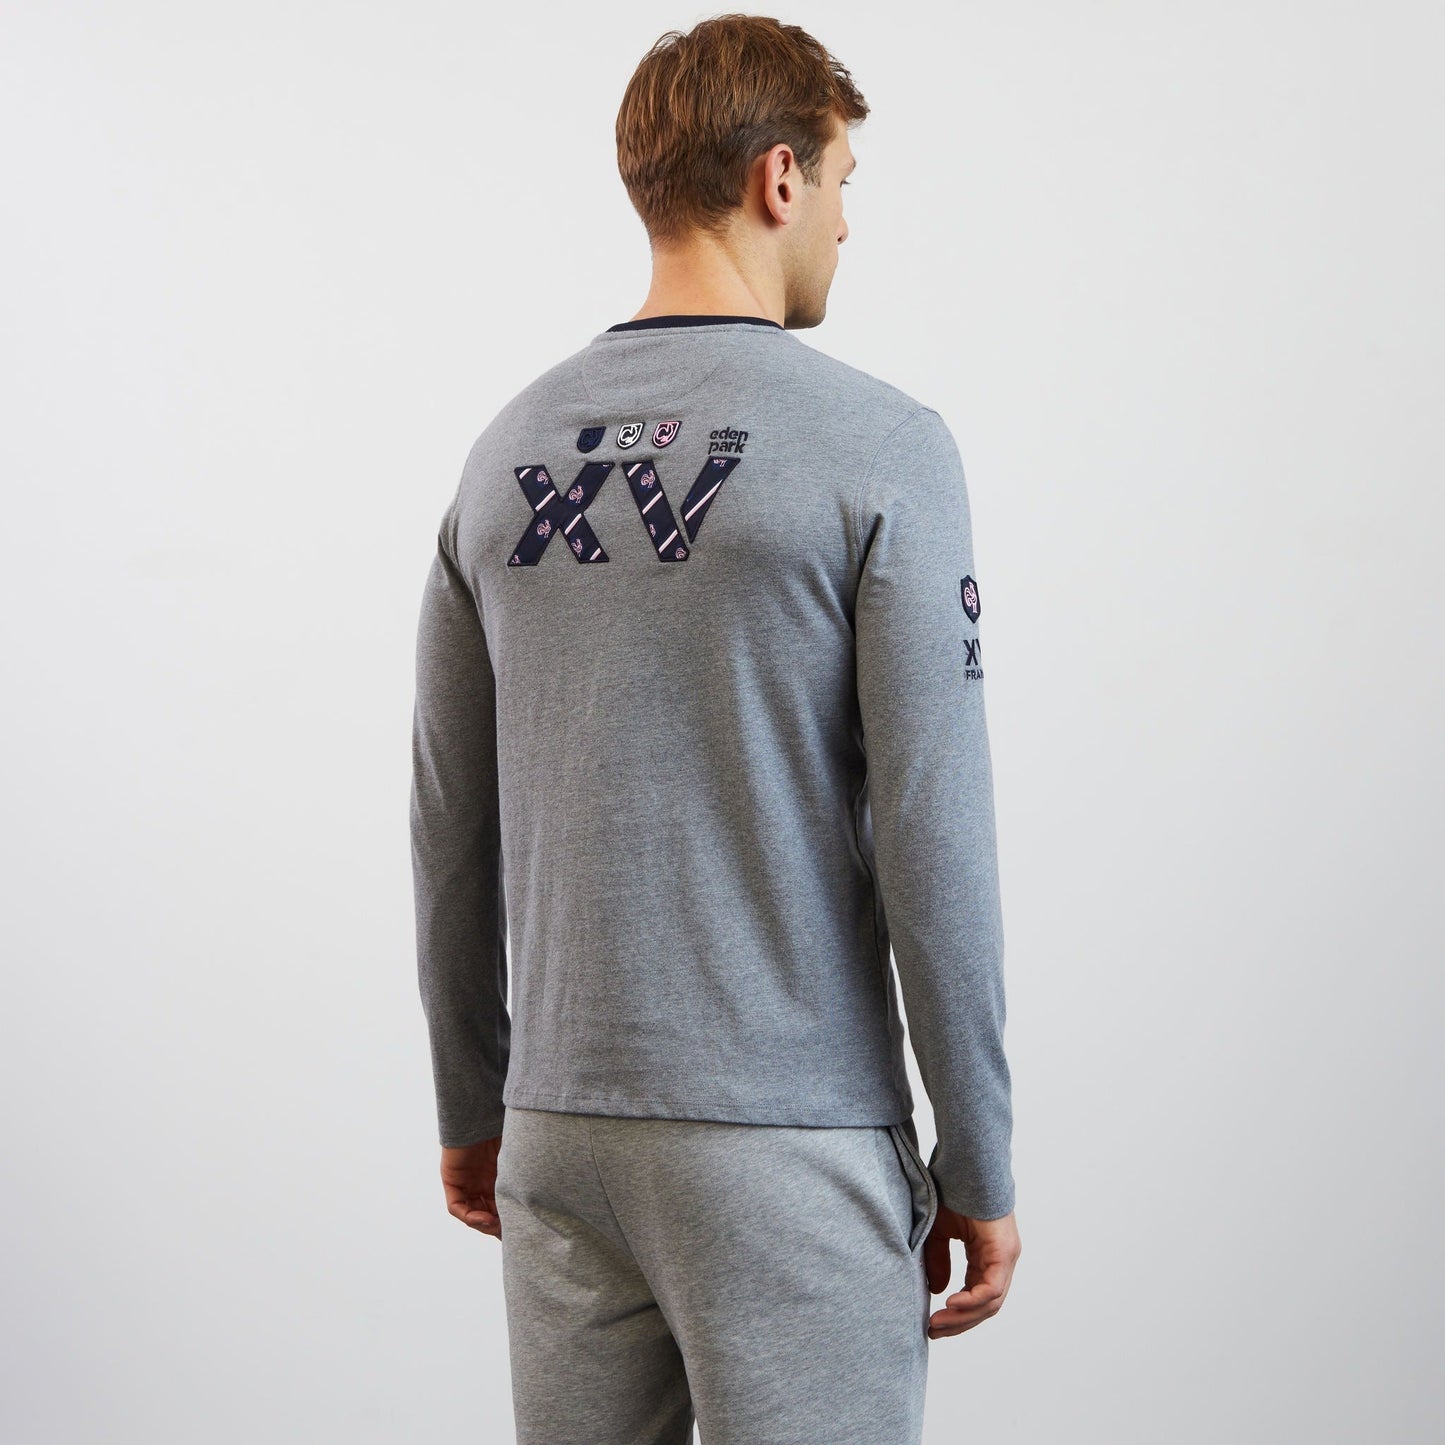 T-shirt gris manches longues détails broderies XV de France - Image 4